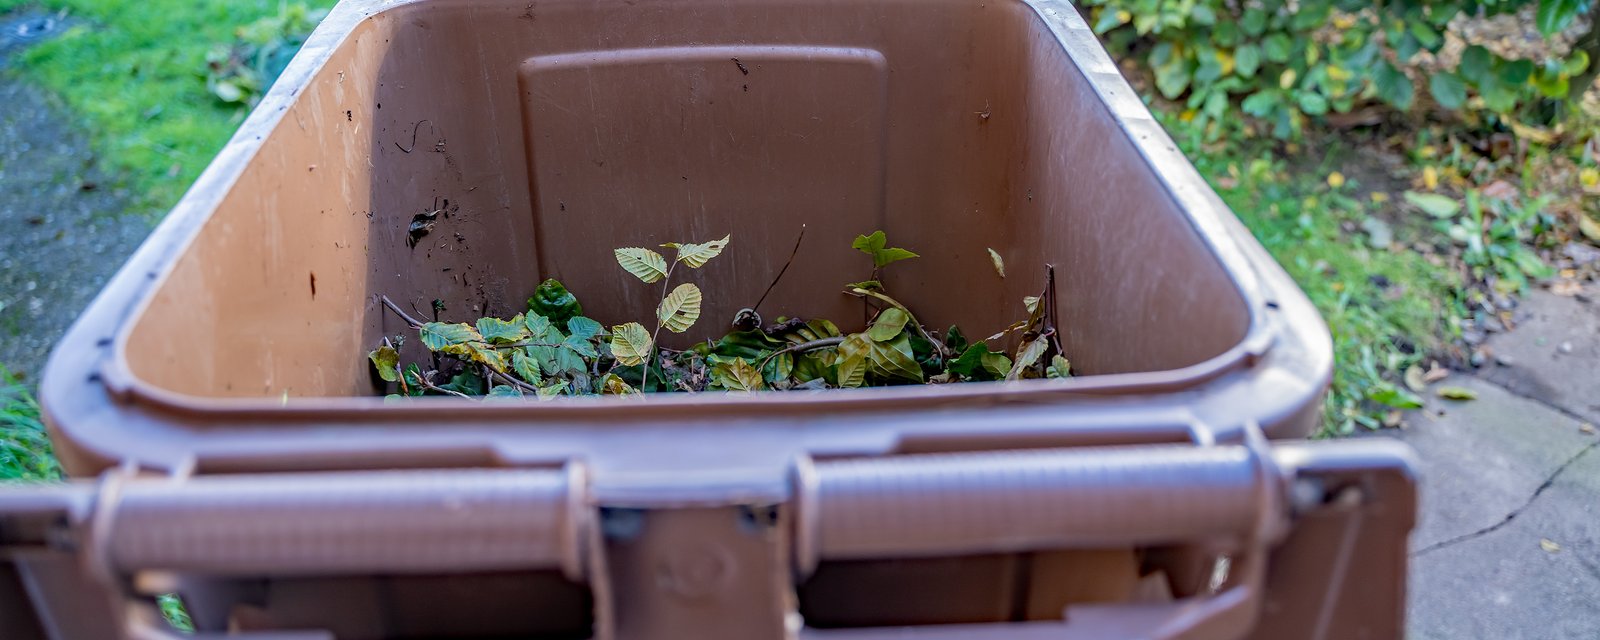 Un proprio interdit à ses locataires de faire du compost 